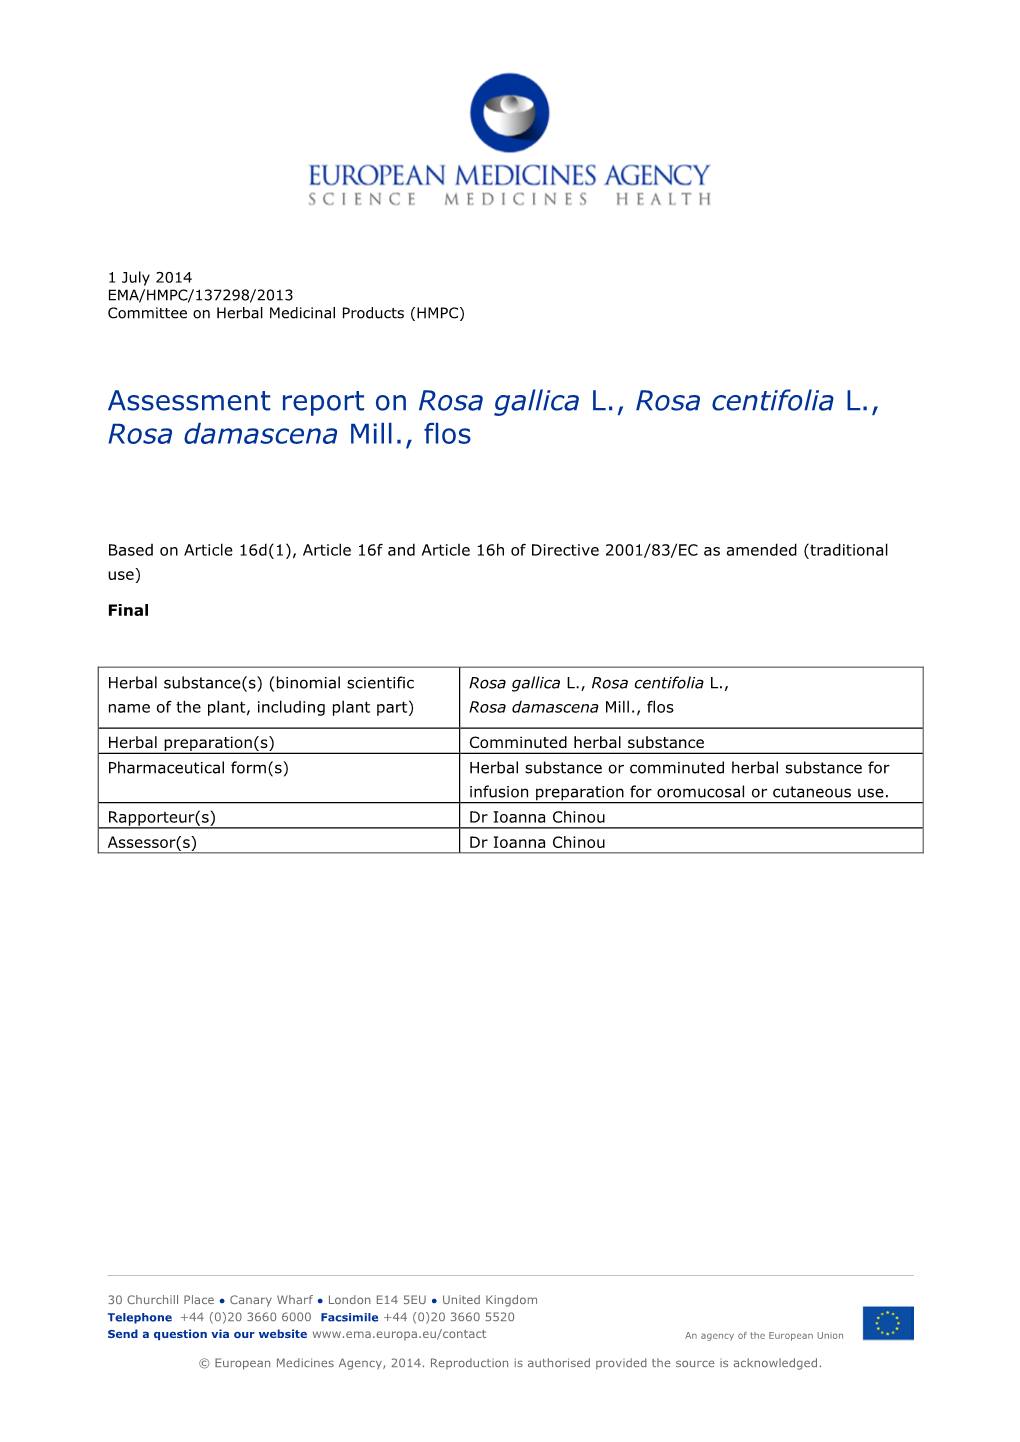 Assessment Report on Rosa Gallica L., Rosa Centifolia L., Rosa Damascena Mill., Flos